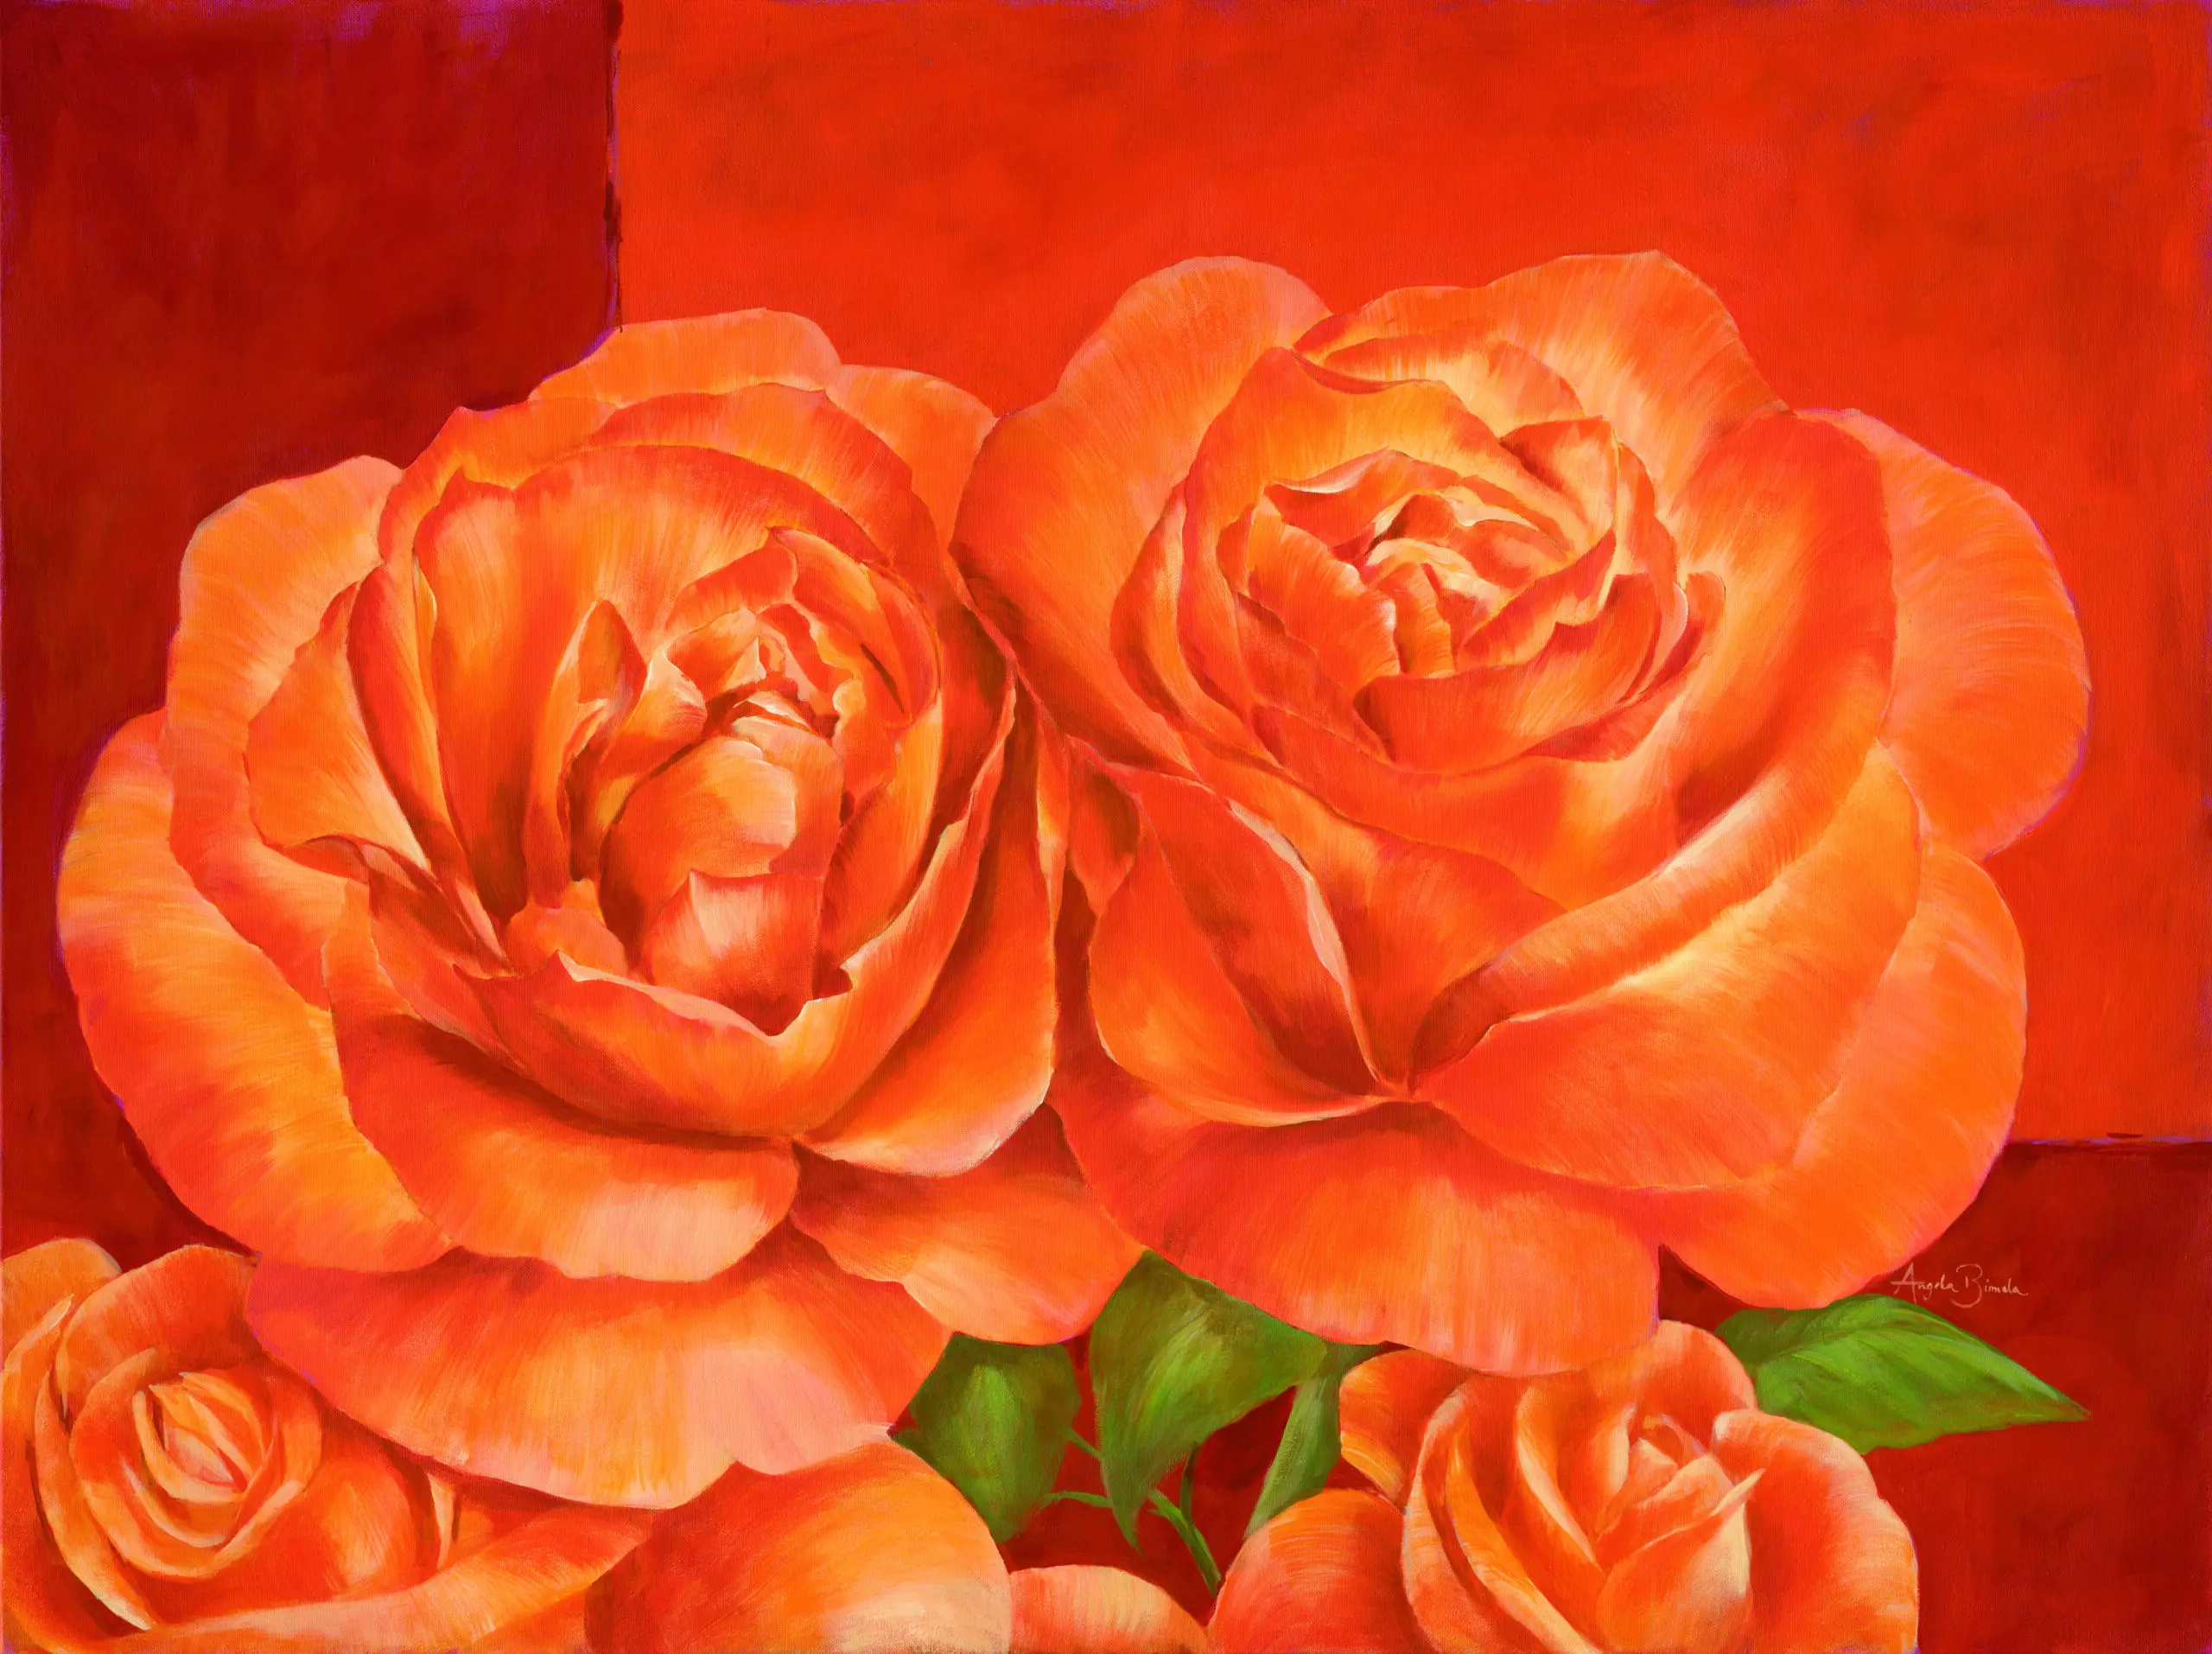 Wandbild (5025) Orange Countryrose präsentiert: Kreatives,Details und Strukturen,Natur,Blumen und Blüten